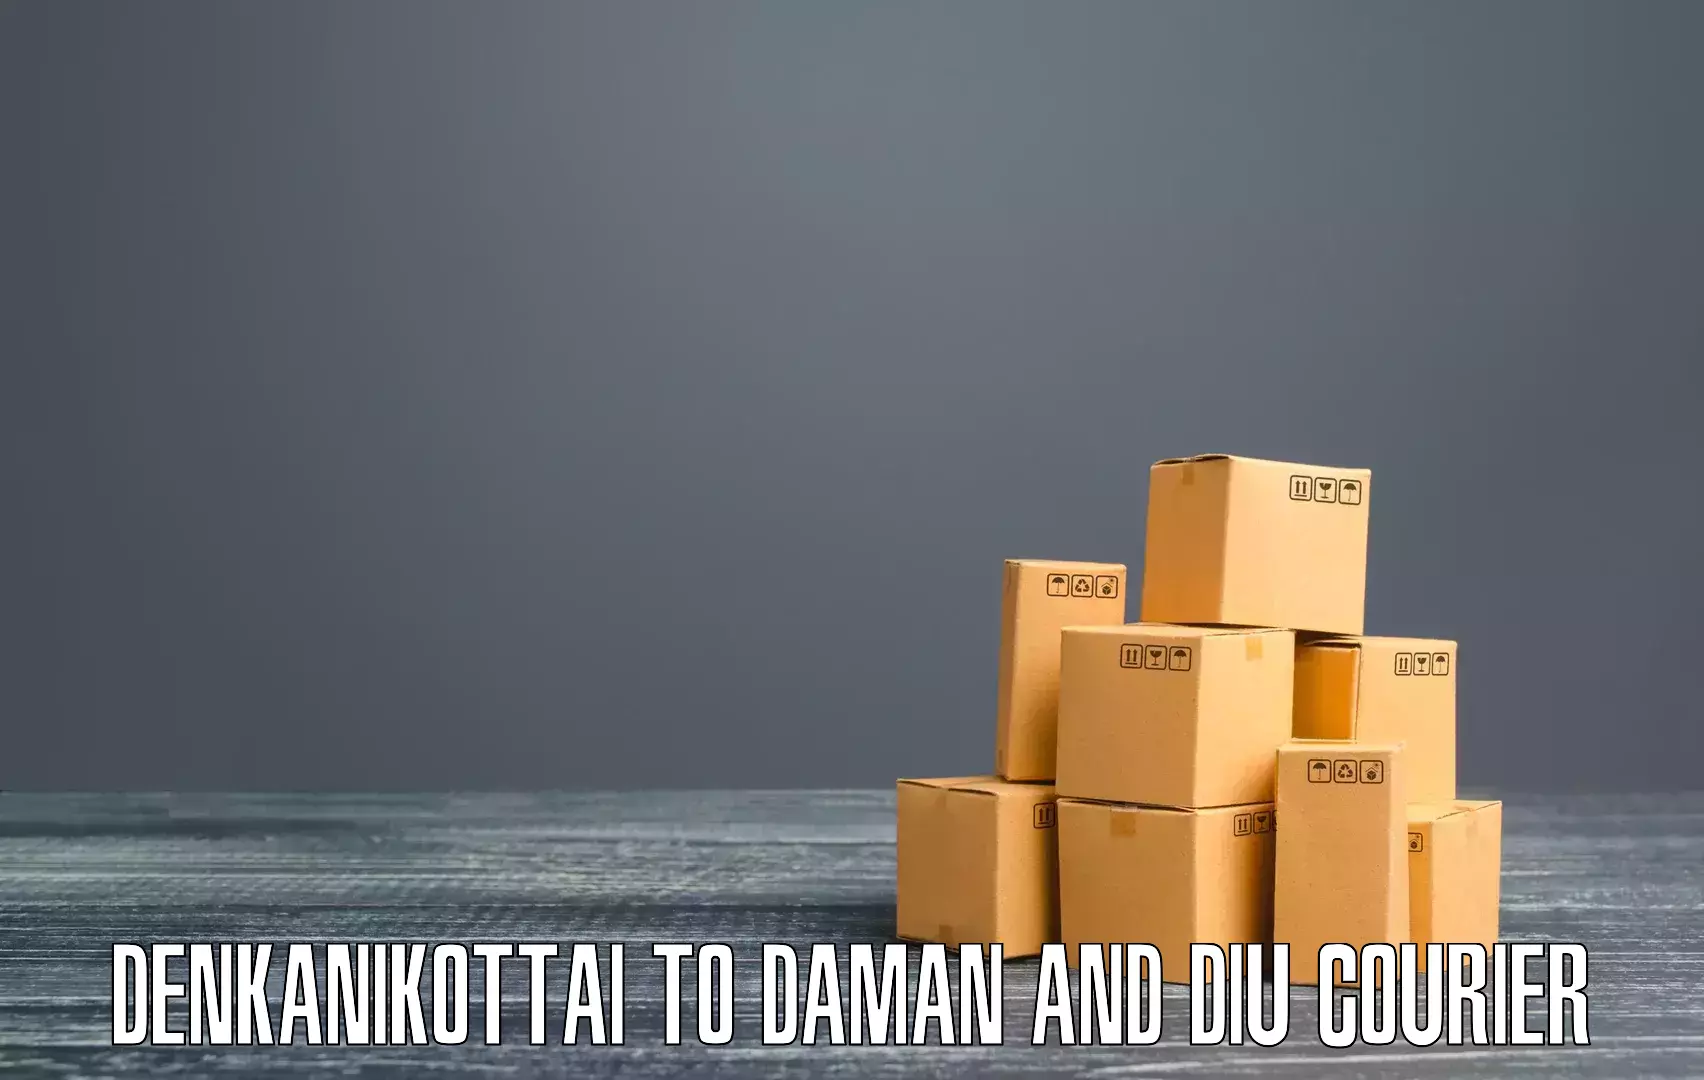 Comprehensive freight services Denkanikottai to Daman